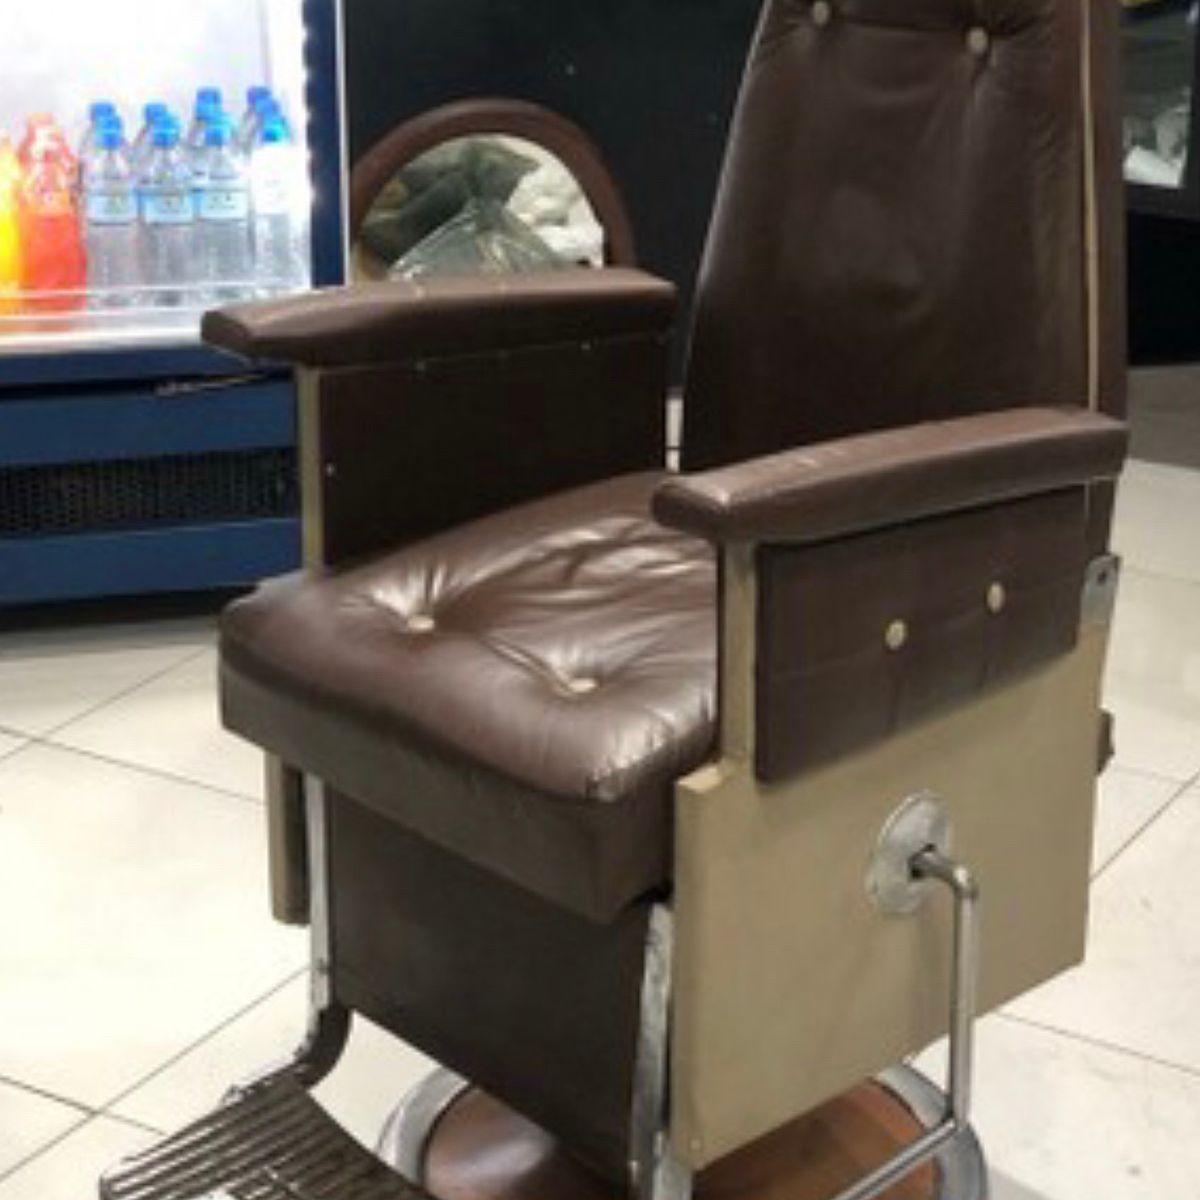 Barbearia Diniz - Cadeiras Ferrante usada já por mais de